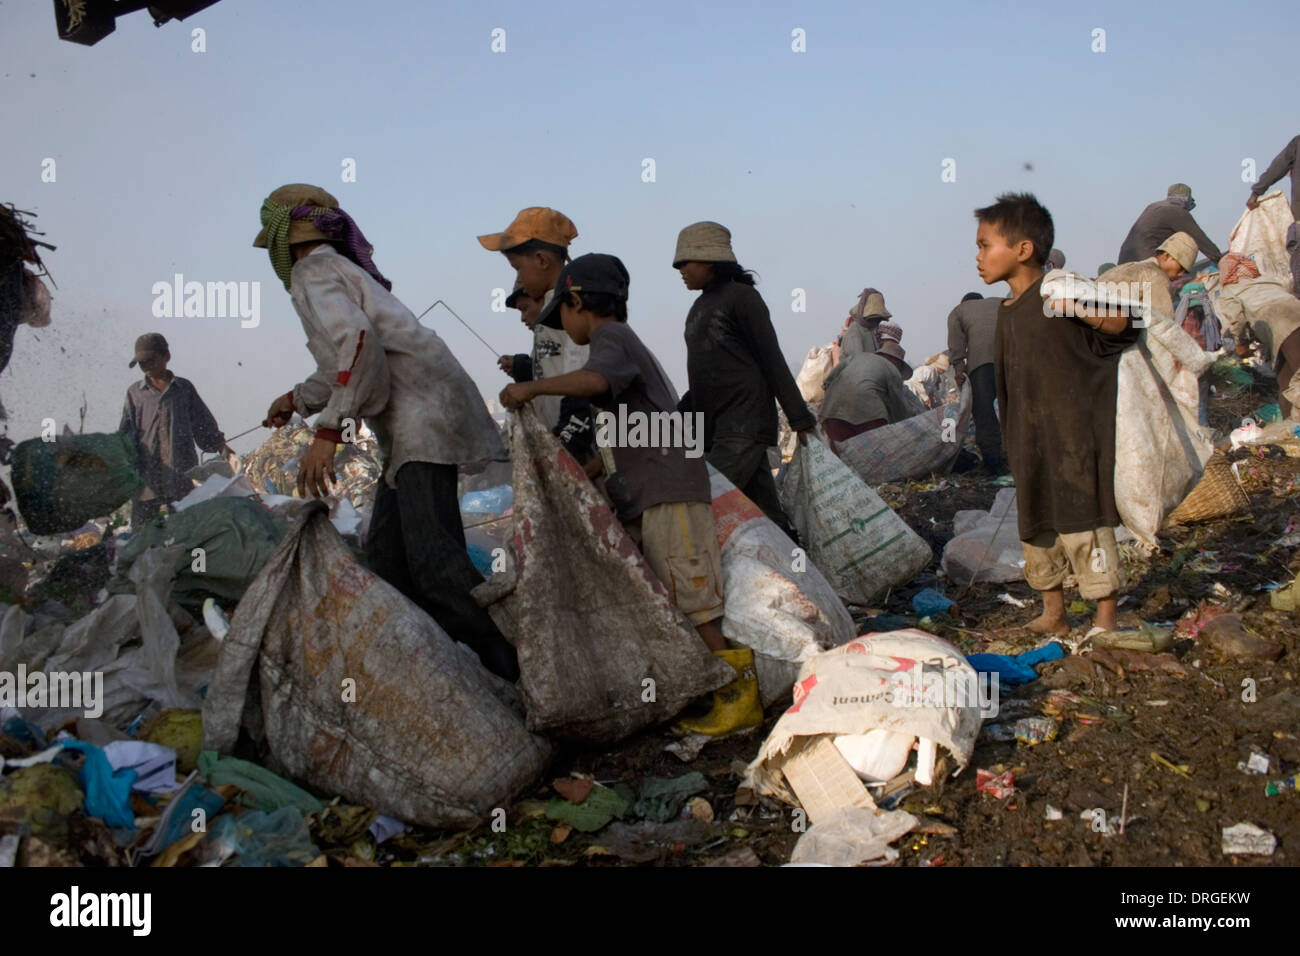 Un groupe de récupérateurs recueillent des matières toxiques à la décharge de Stung Meanchey à Phnom Penh, Cambodge. Banque D'Images